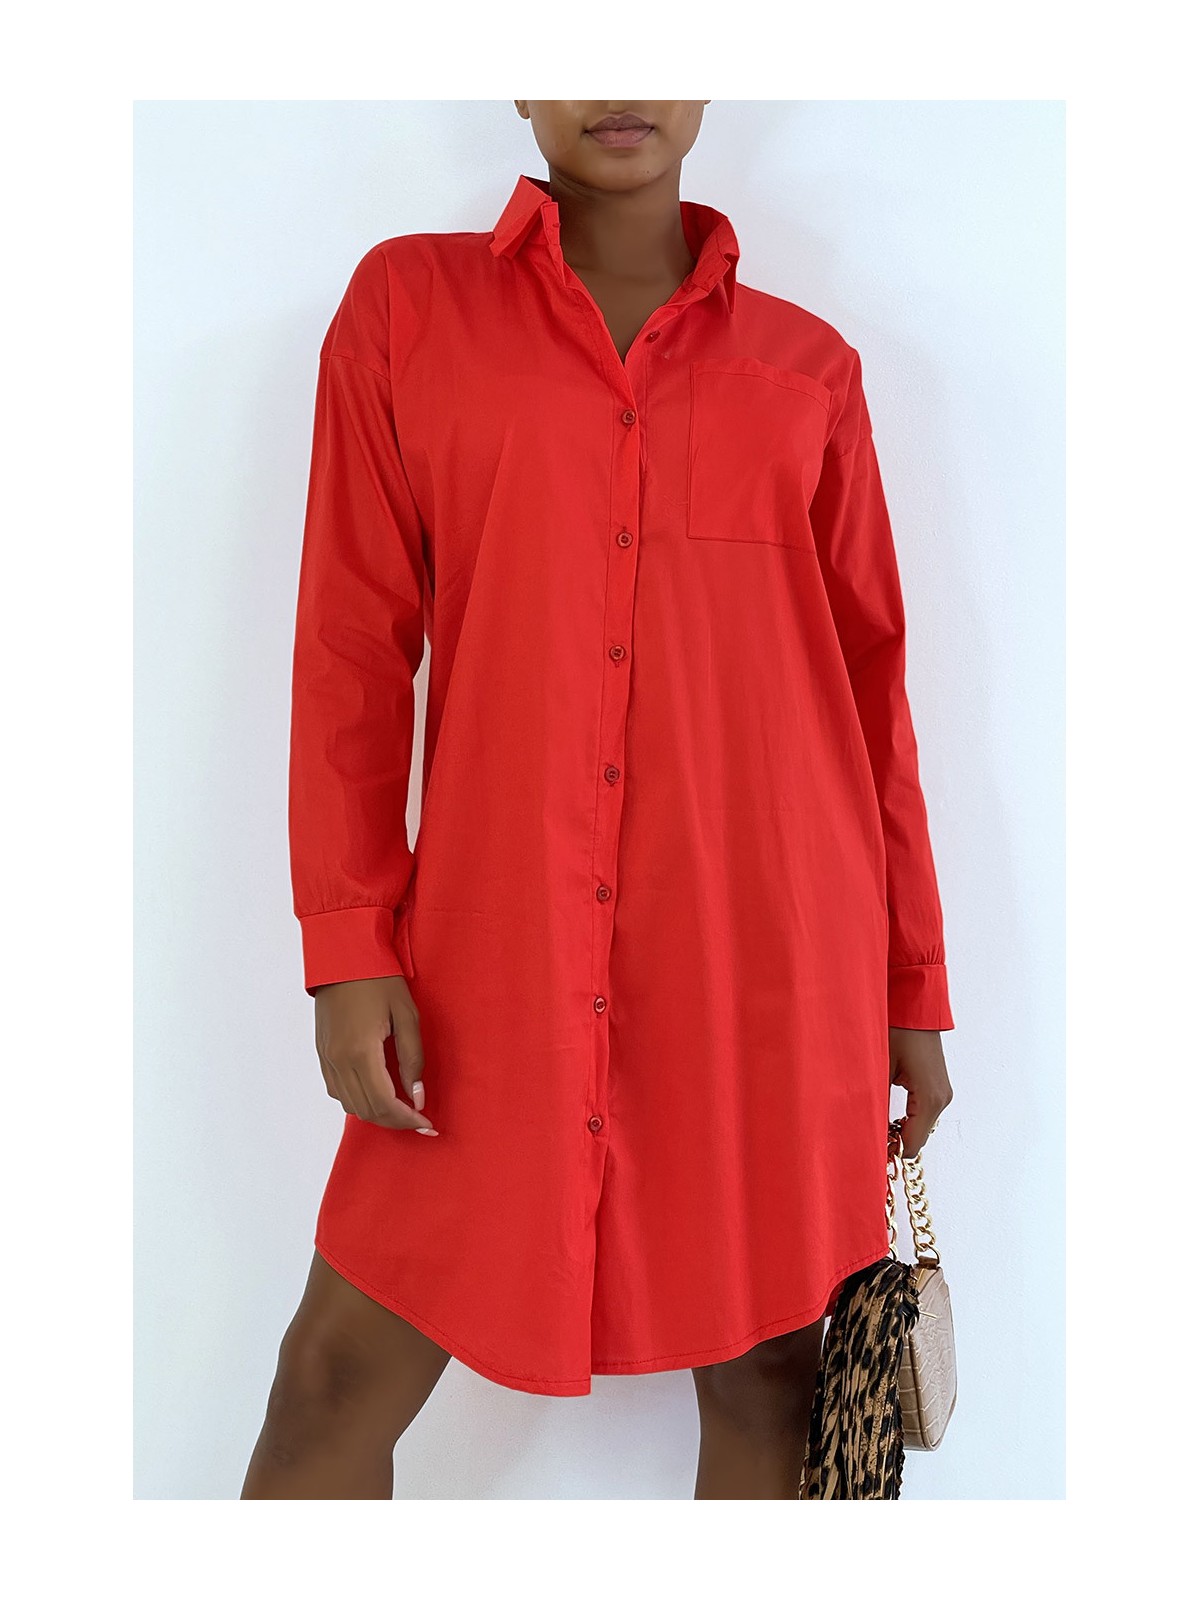 LoLLue robe chemise rouge avec poche. Chemise femme - 1